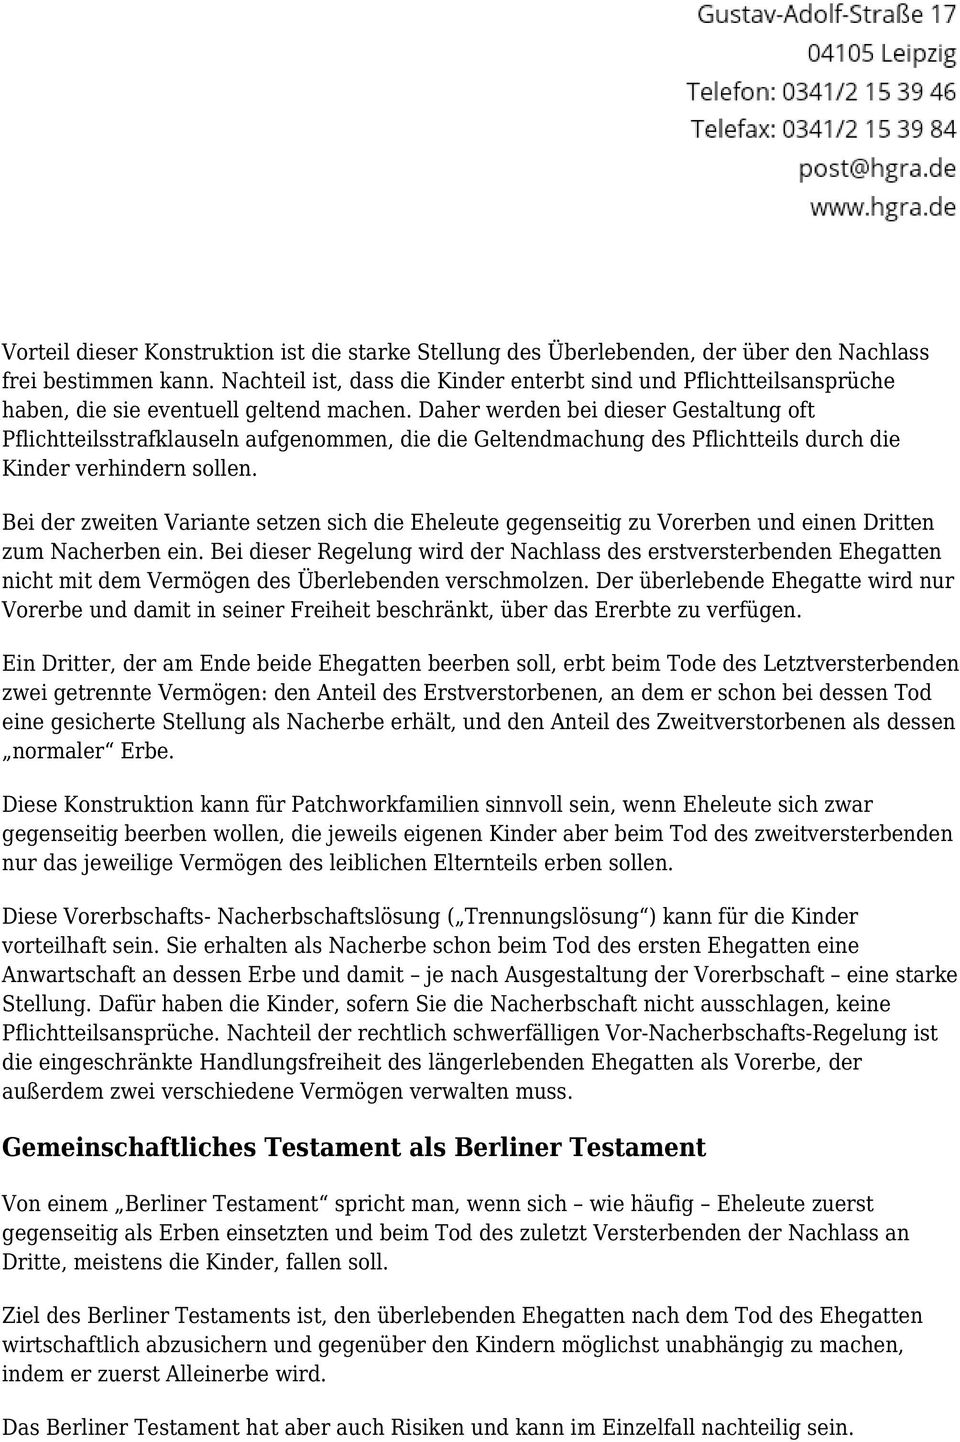 Das Gemeinschaftliche Ehegattentestament Und Das Berliner Testament Pdf Free Download